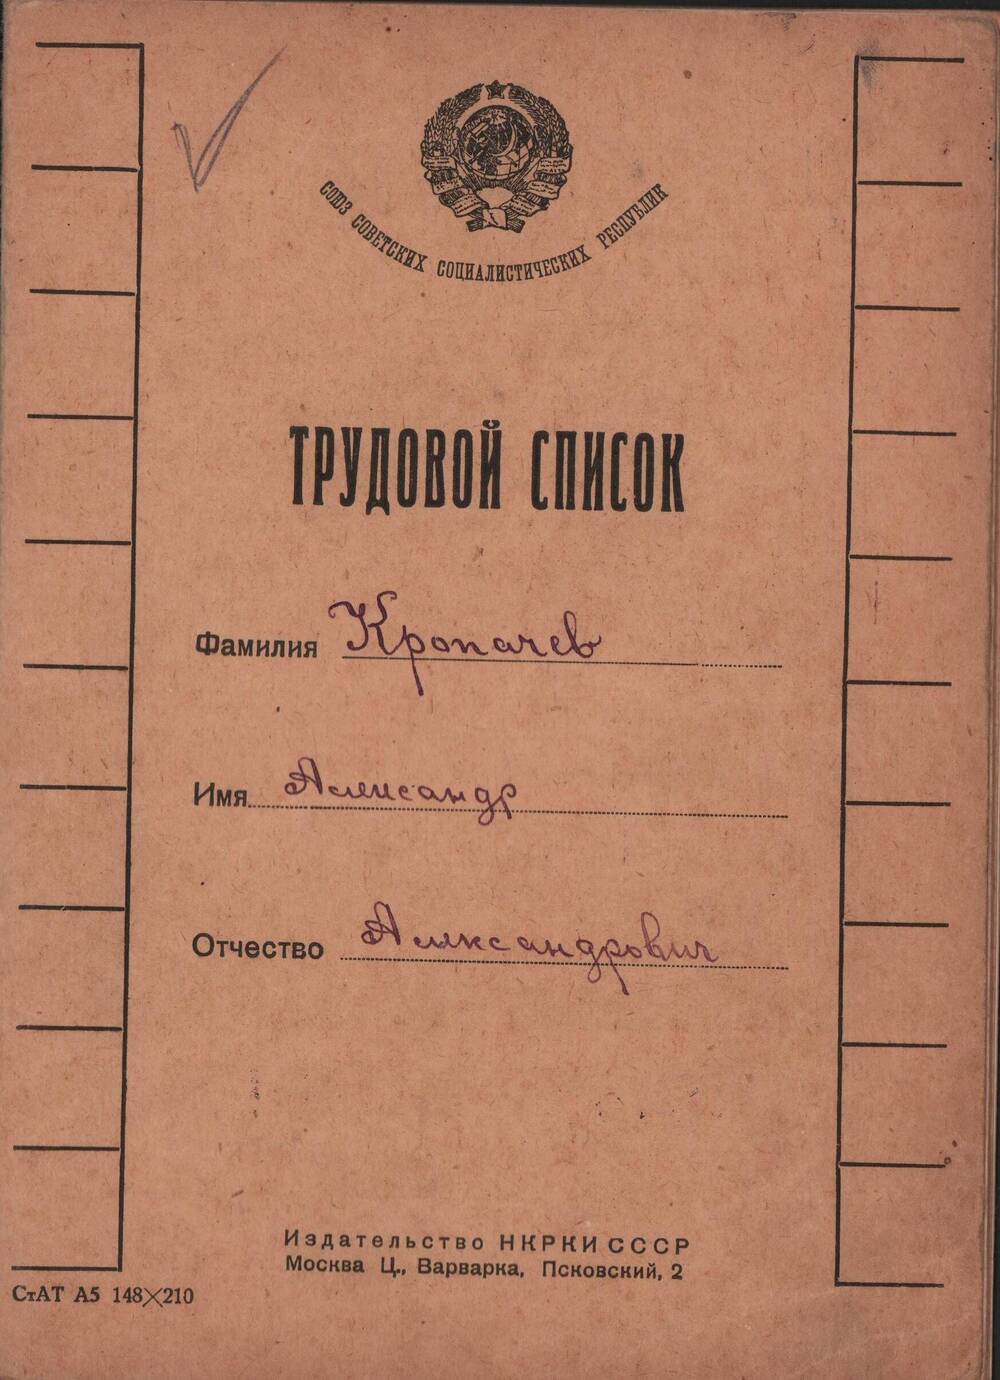 Трудовой список Кропачева Александра Александровича с записями о трудовой деятельности с 4 мая 1926 г. по 25 января 1933 г.